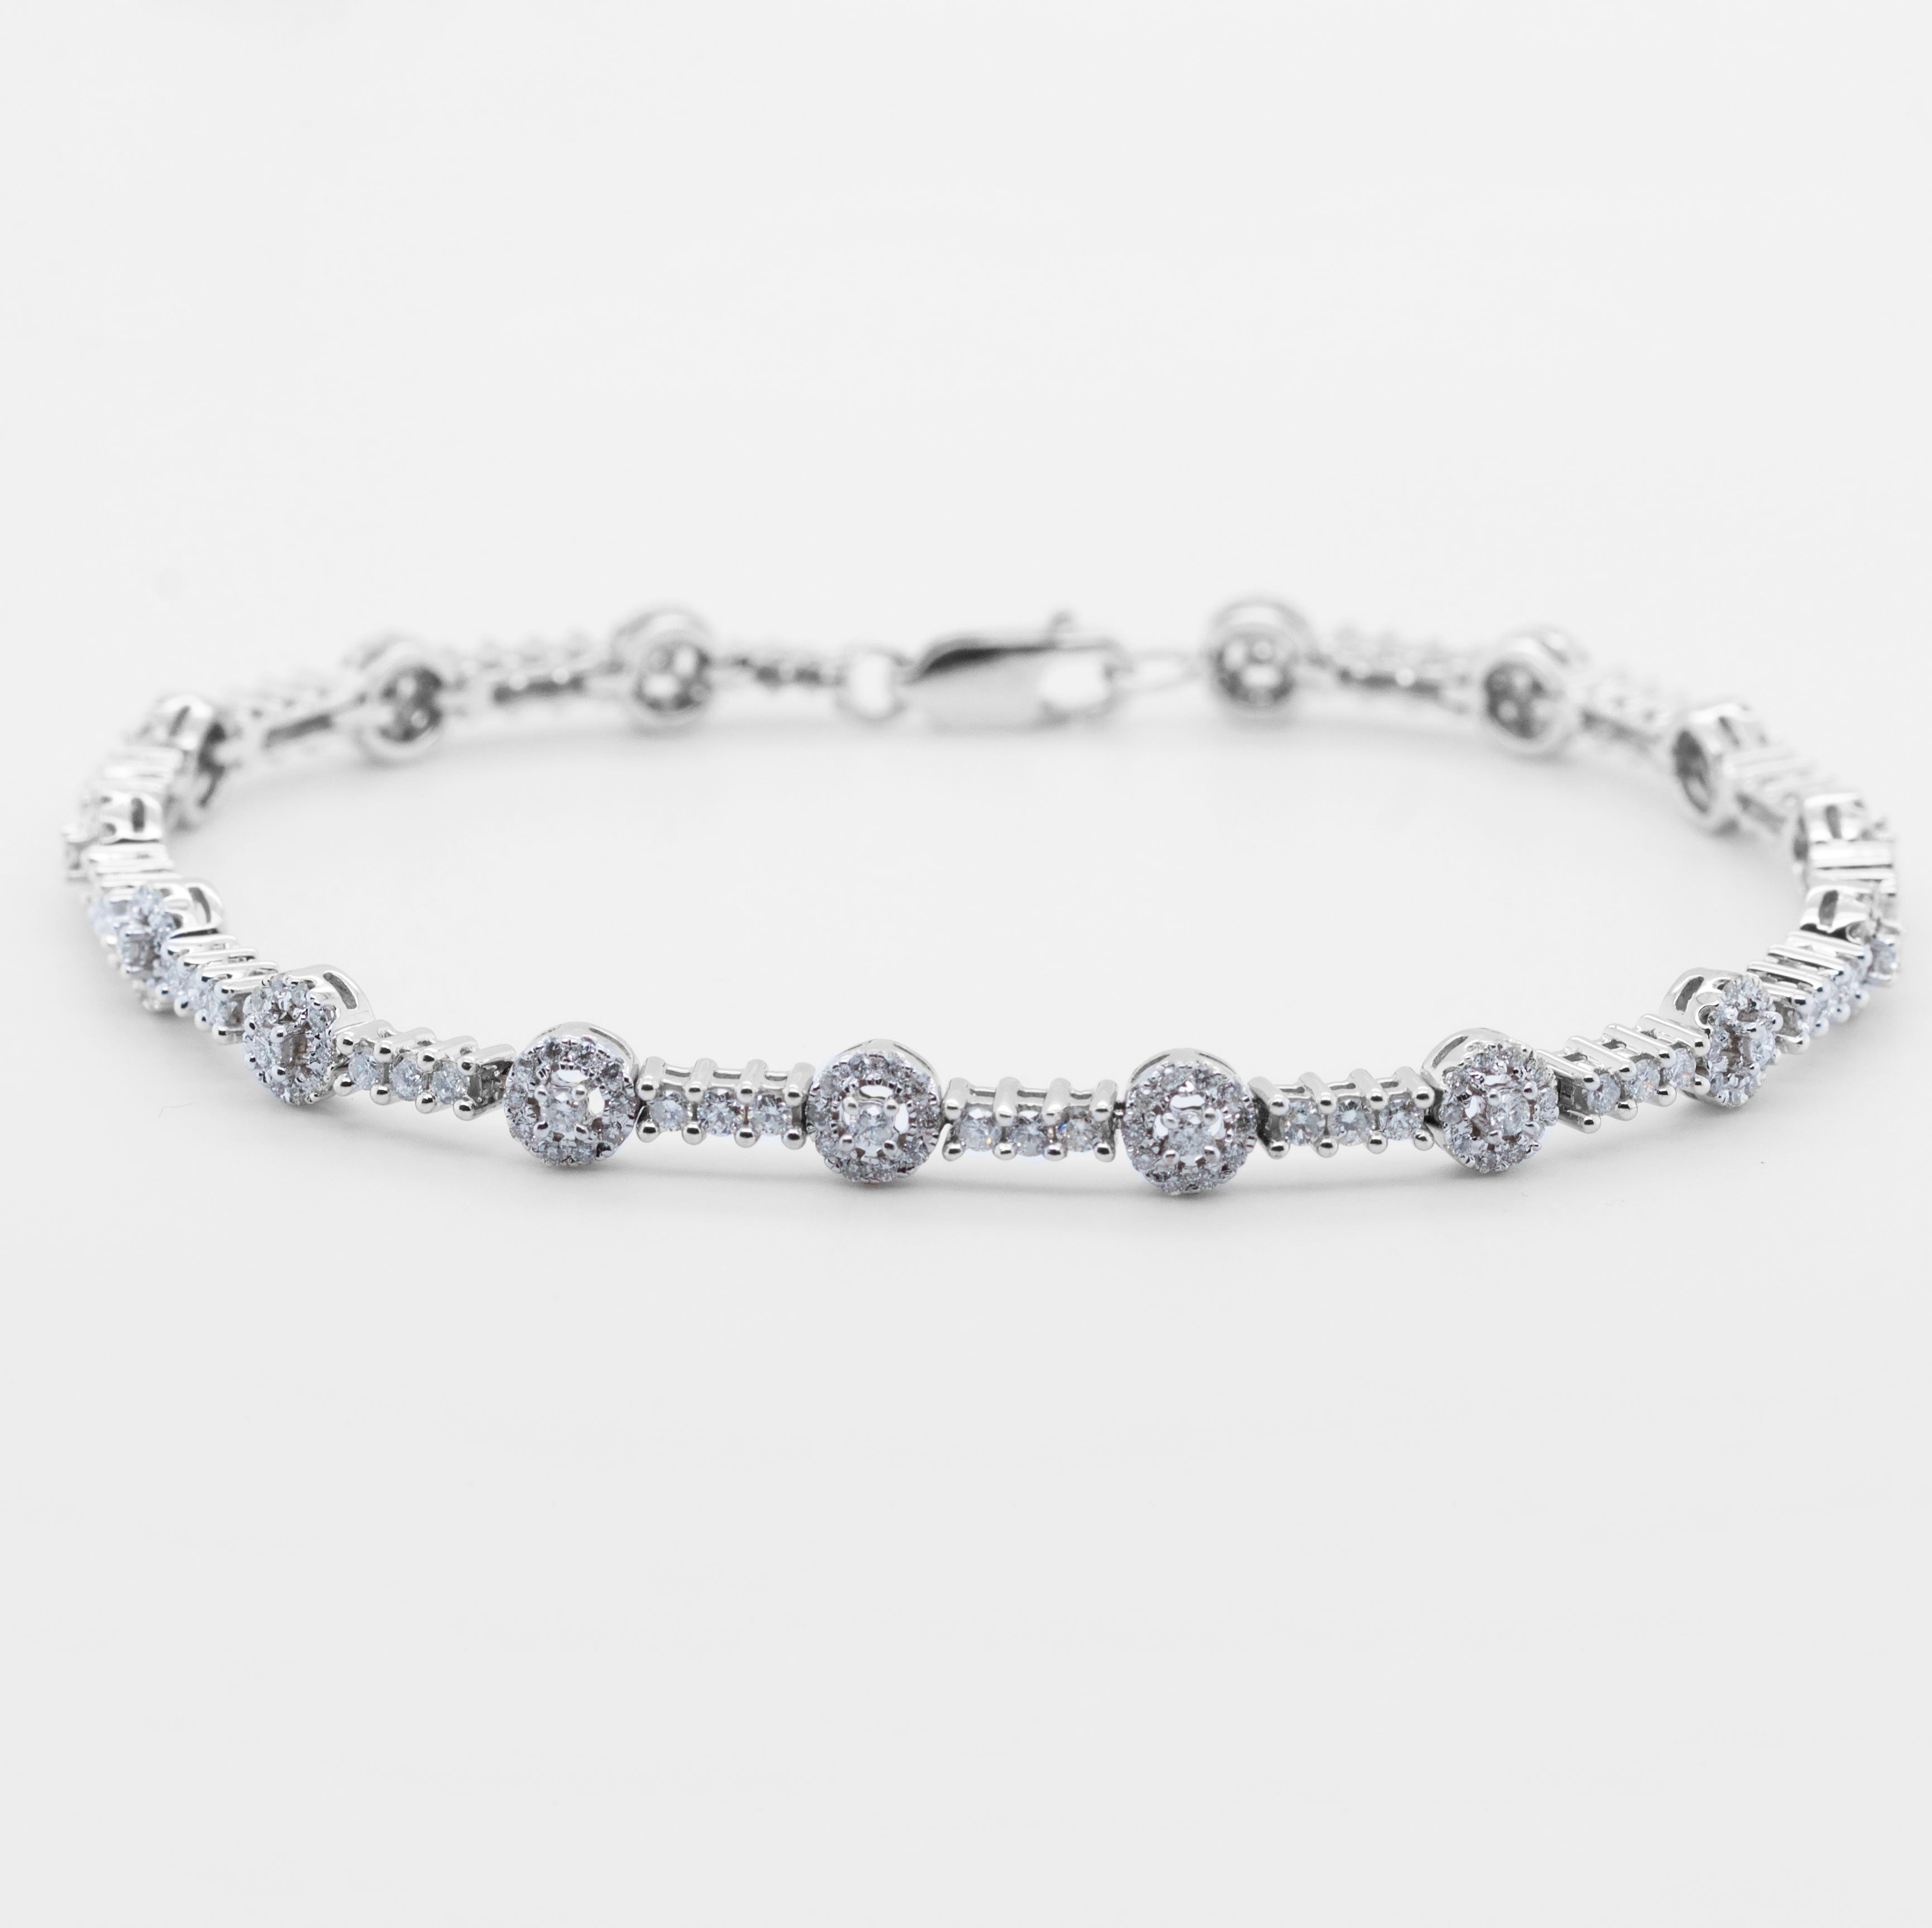 Stunning GIA Diamond Tennis Bracelet for Women, 18k Solid White Gold &  1.5tcttw Real Diamond Bracelet, Valentine's Day Gift - Etsy | Tennis  bracelet diamond, Diamond bracelet design, Diamond bracelet